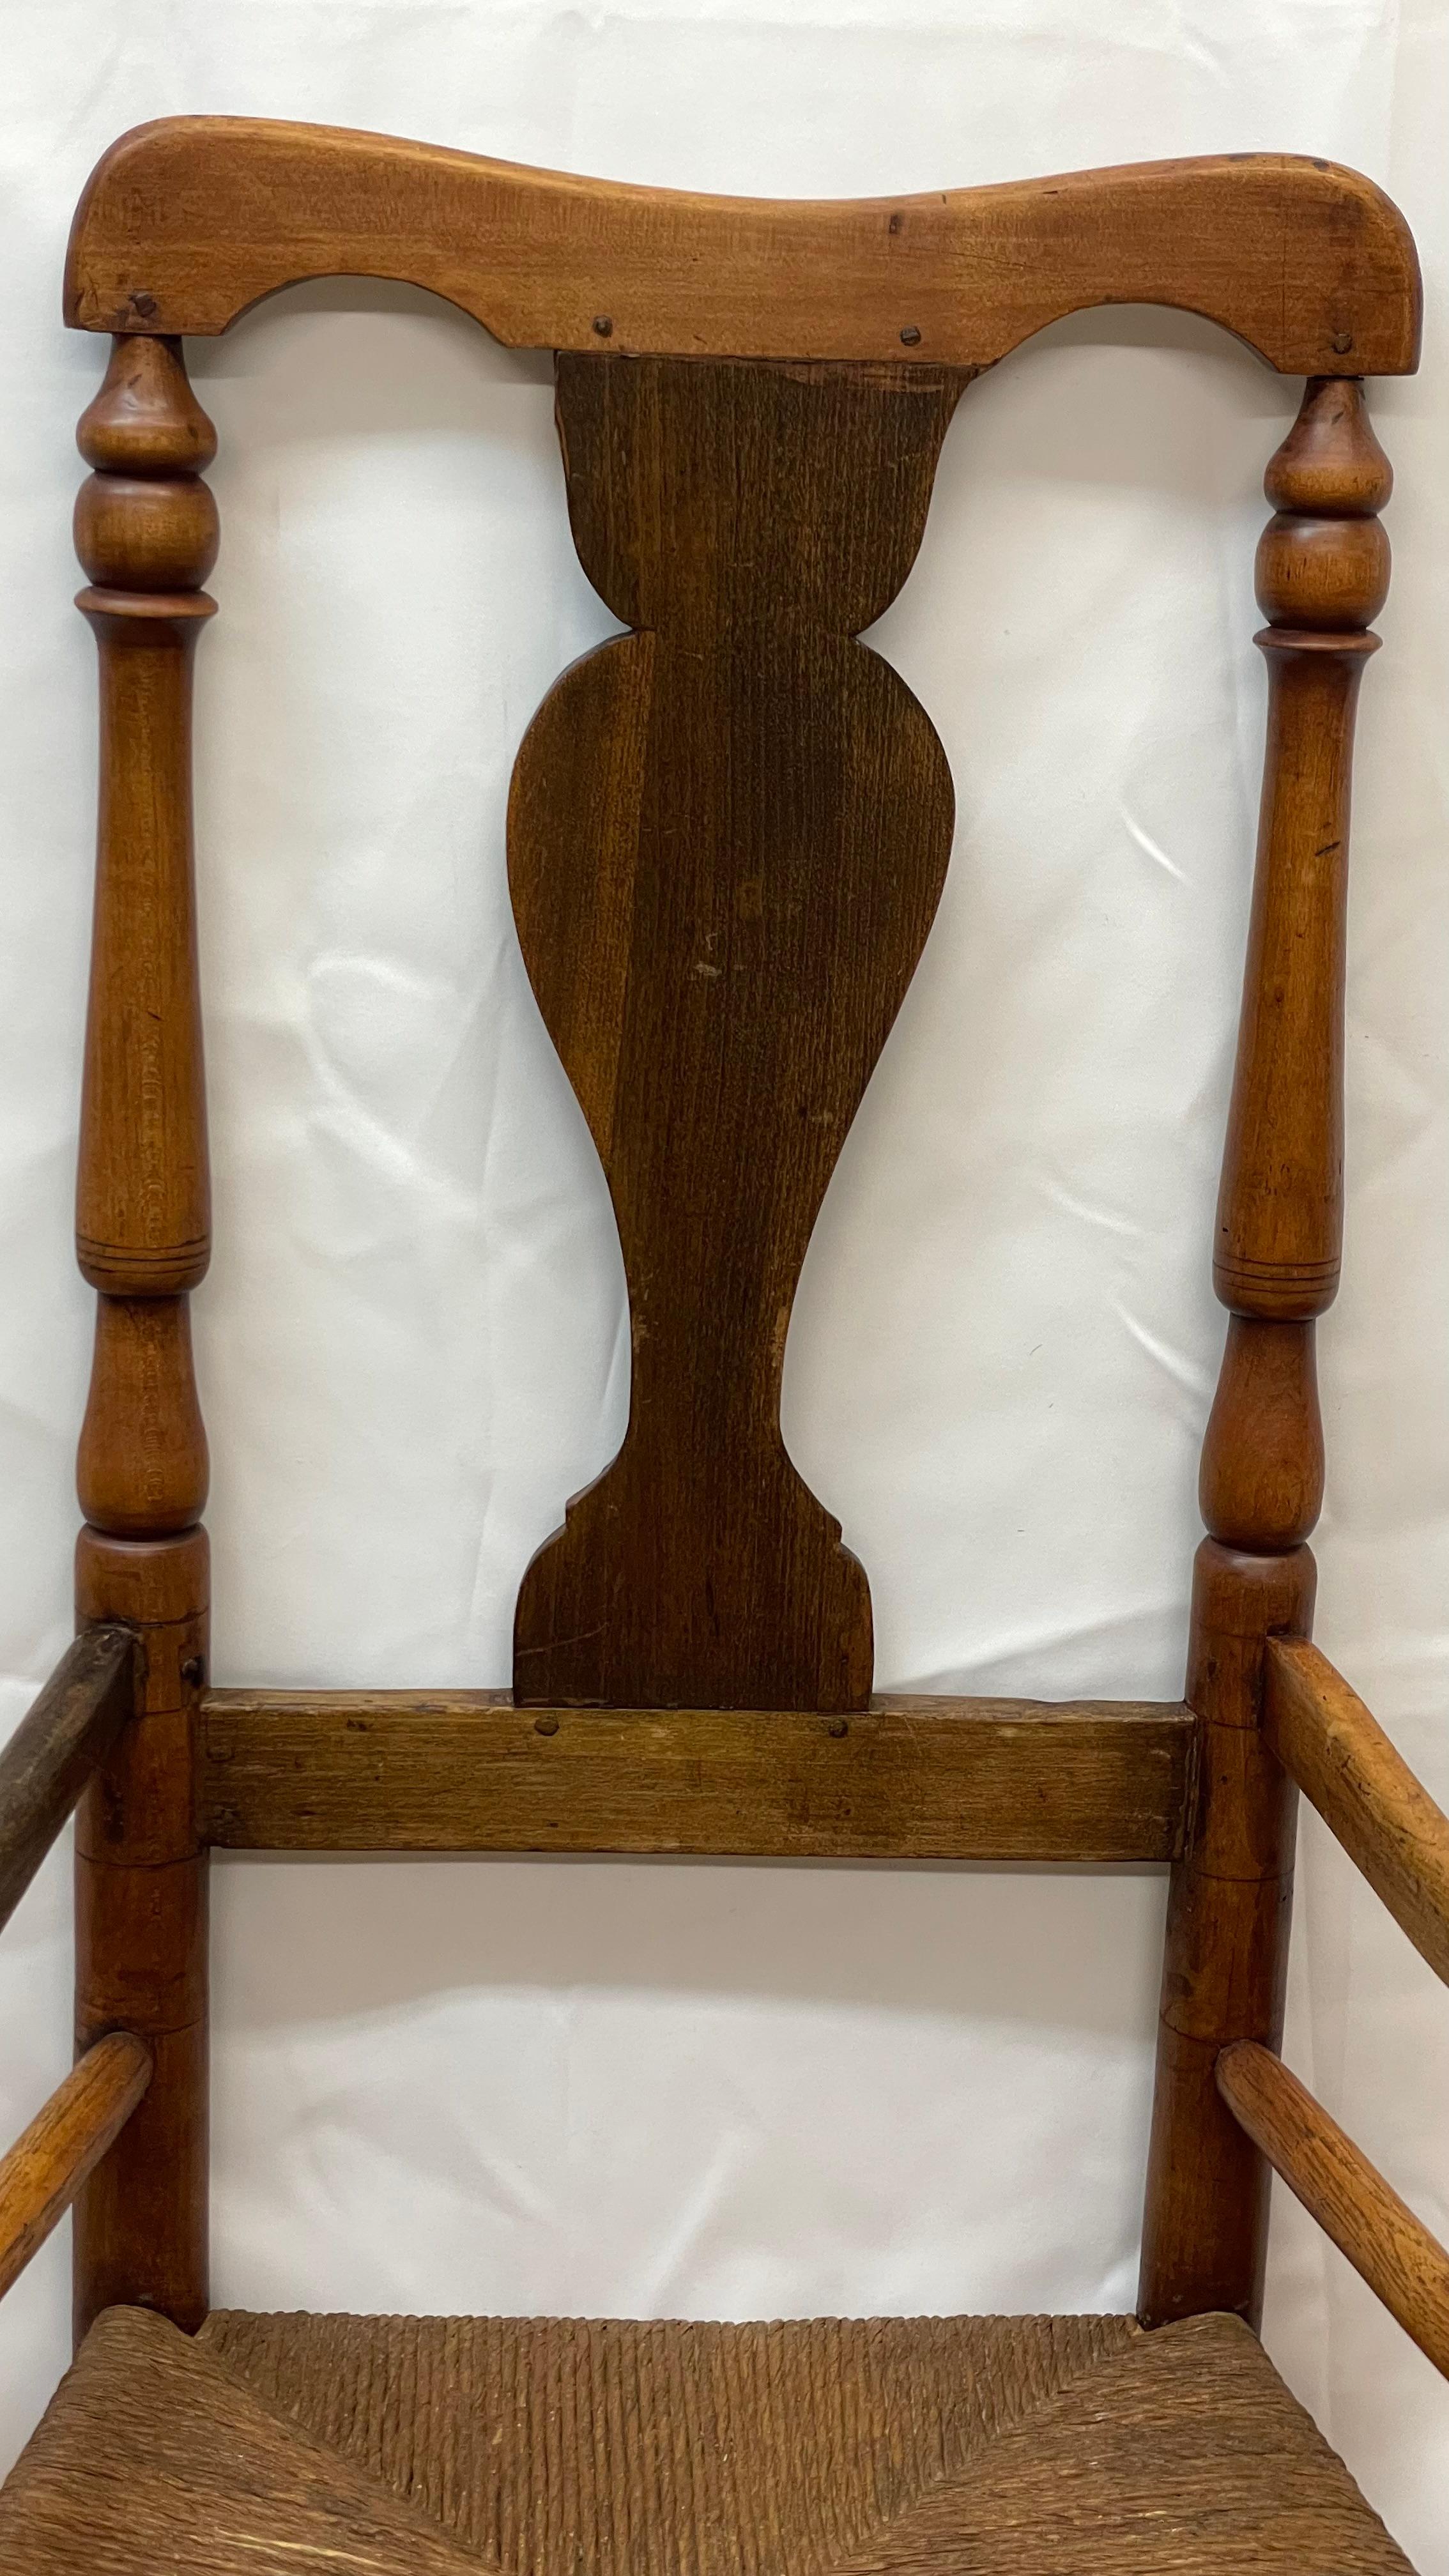 Queen Anne-Sessel aus dem späten 18. bis frühen 19. Jahrhundert, möglicherweise Wallace Nutting 

22 x 18 x 44